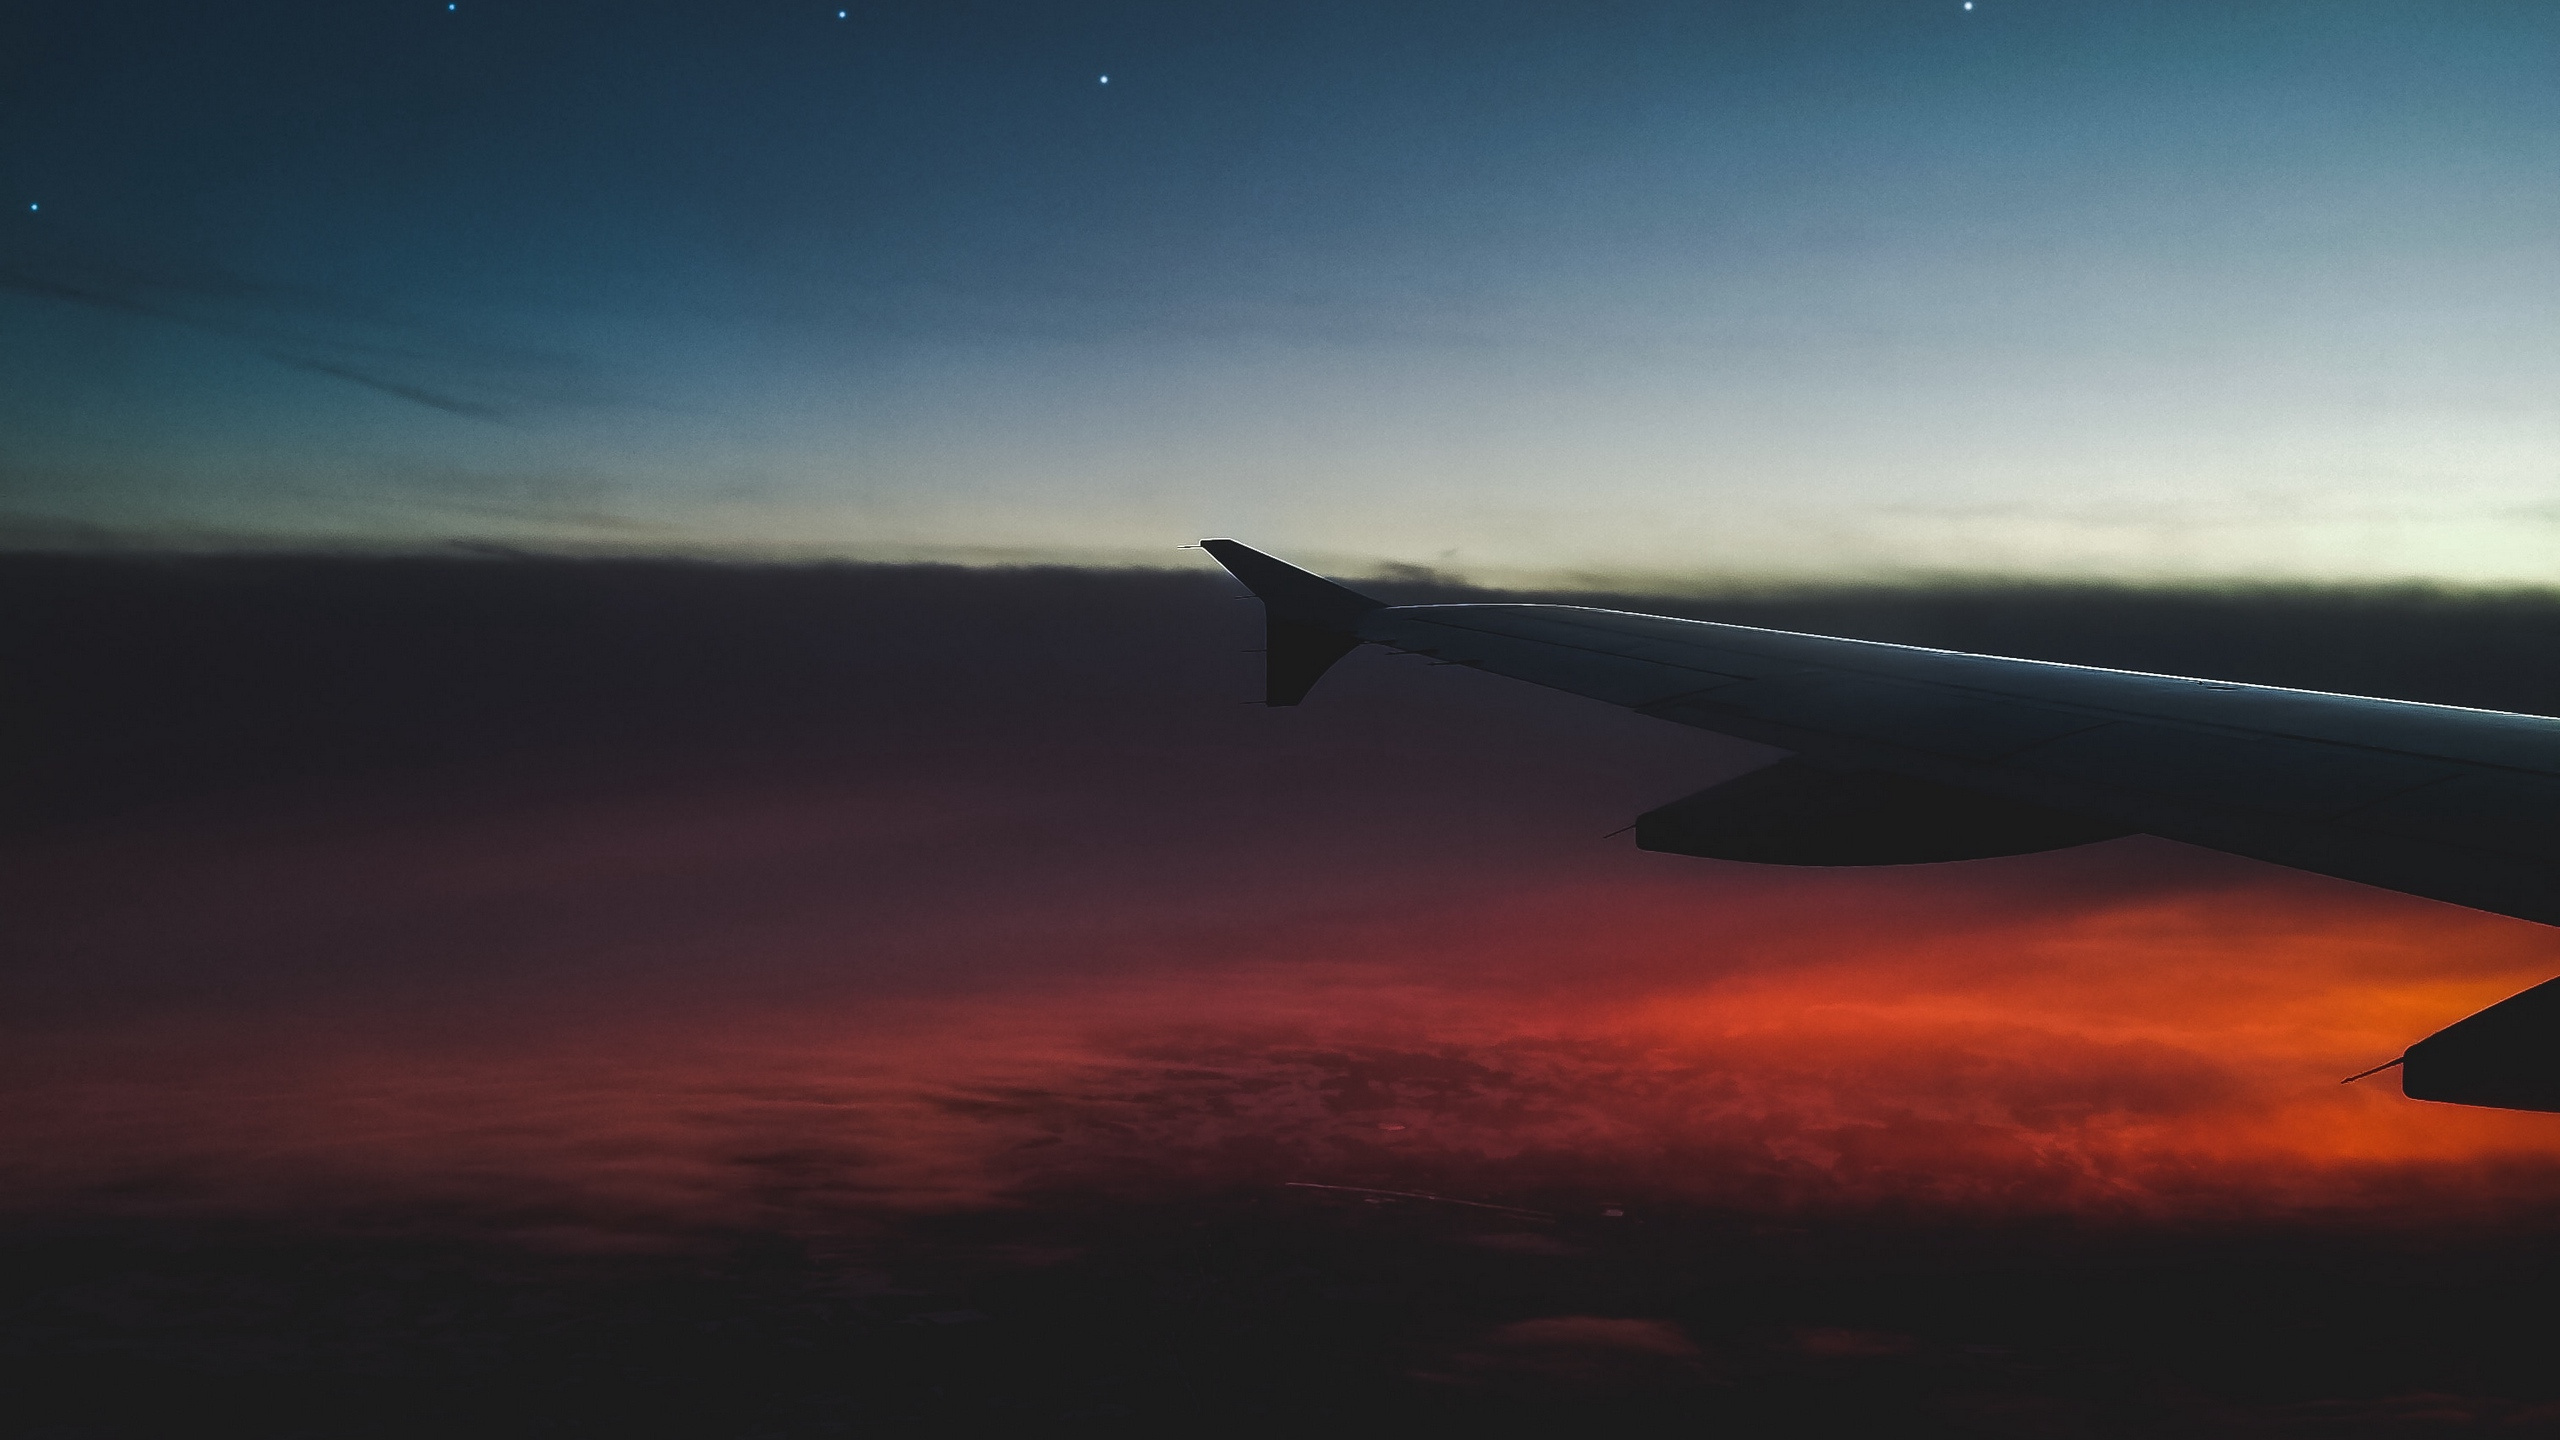 Flugzeugflügel Über Den Wolken Bei Sonnenuntergang. Wallpaper in 2560x1440 Resolution